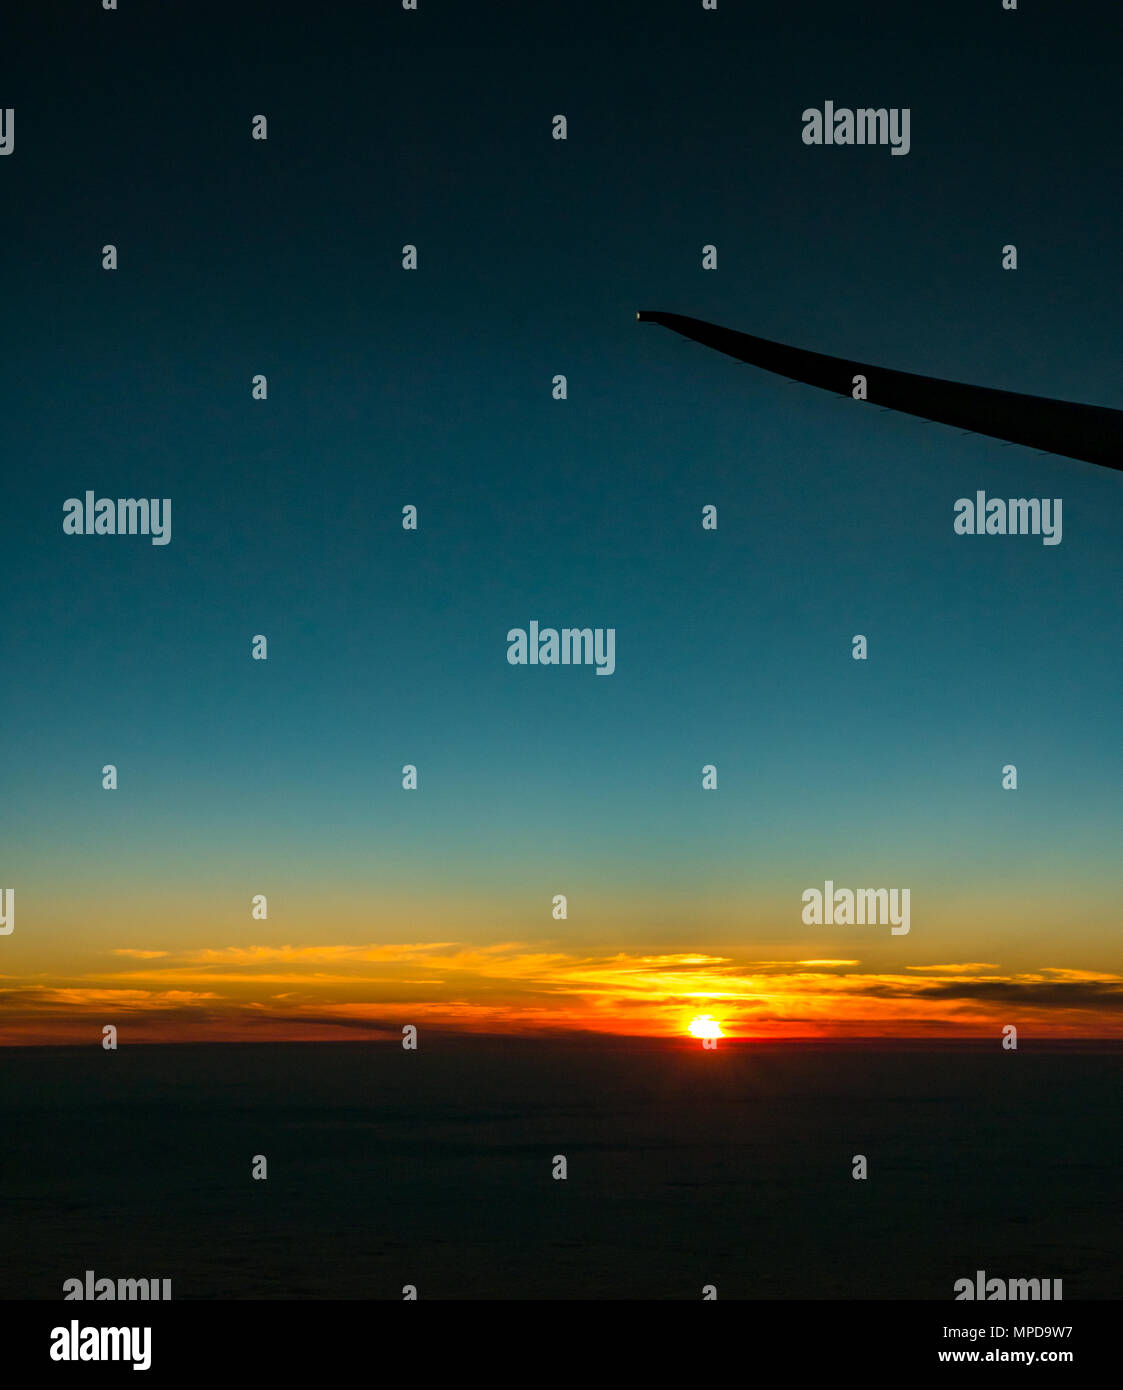 Arancione tramonto con chiaramente il cielo blu e basso orizzonte, preso dalla finestra aereo, con l'aereo ala punta silhouette, decollare da Heathro, London, Regno Unito Foto Stock